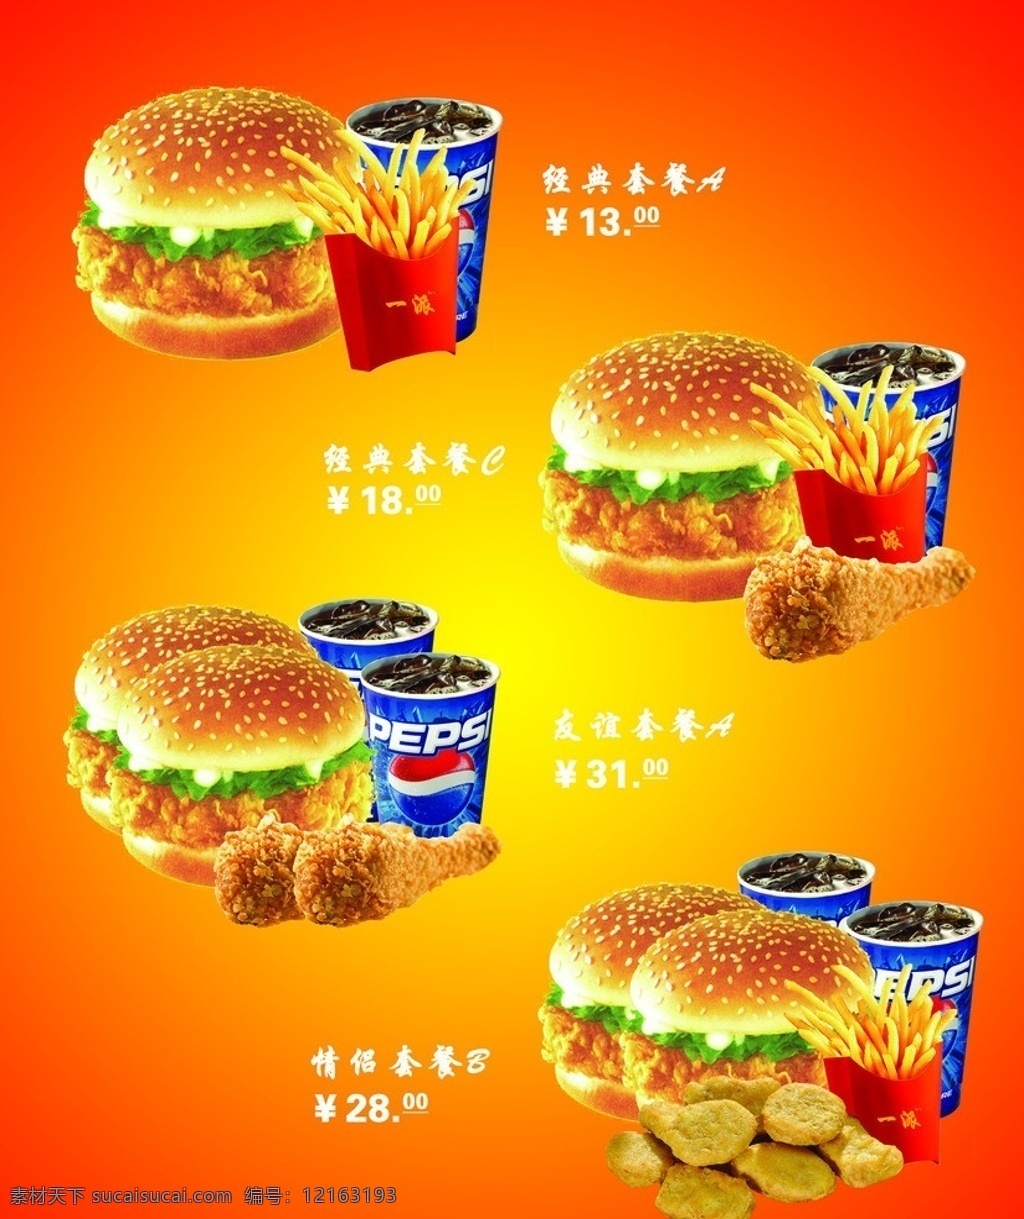 麦加美 套餐 汉堡 可乐 鸡腿 广告设计模板 源文件